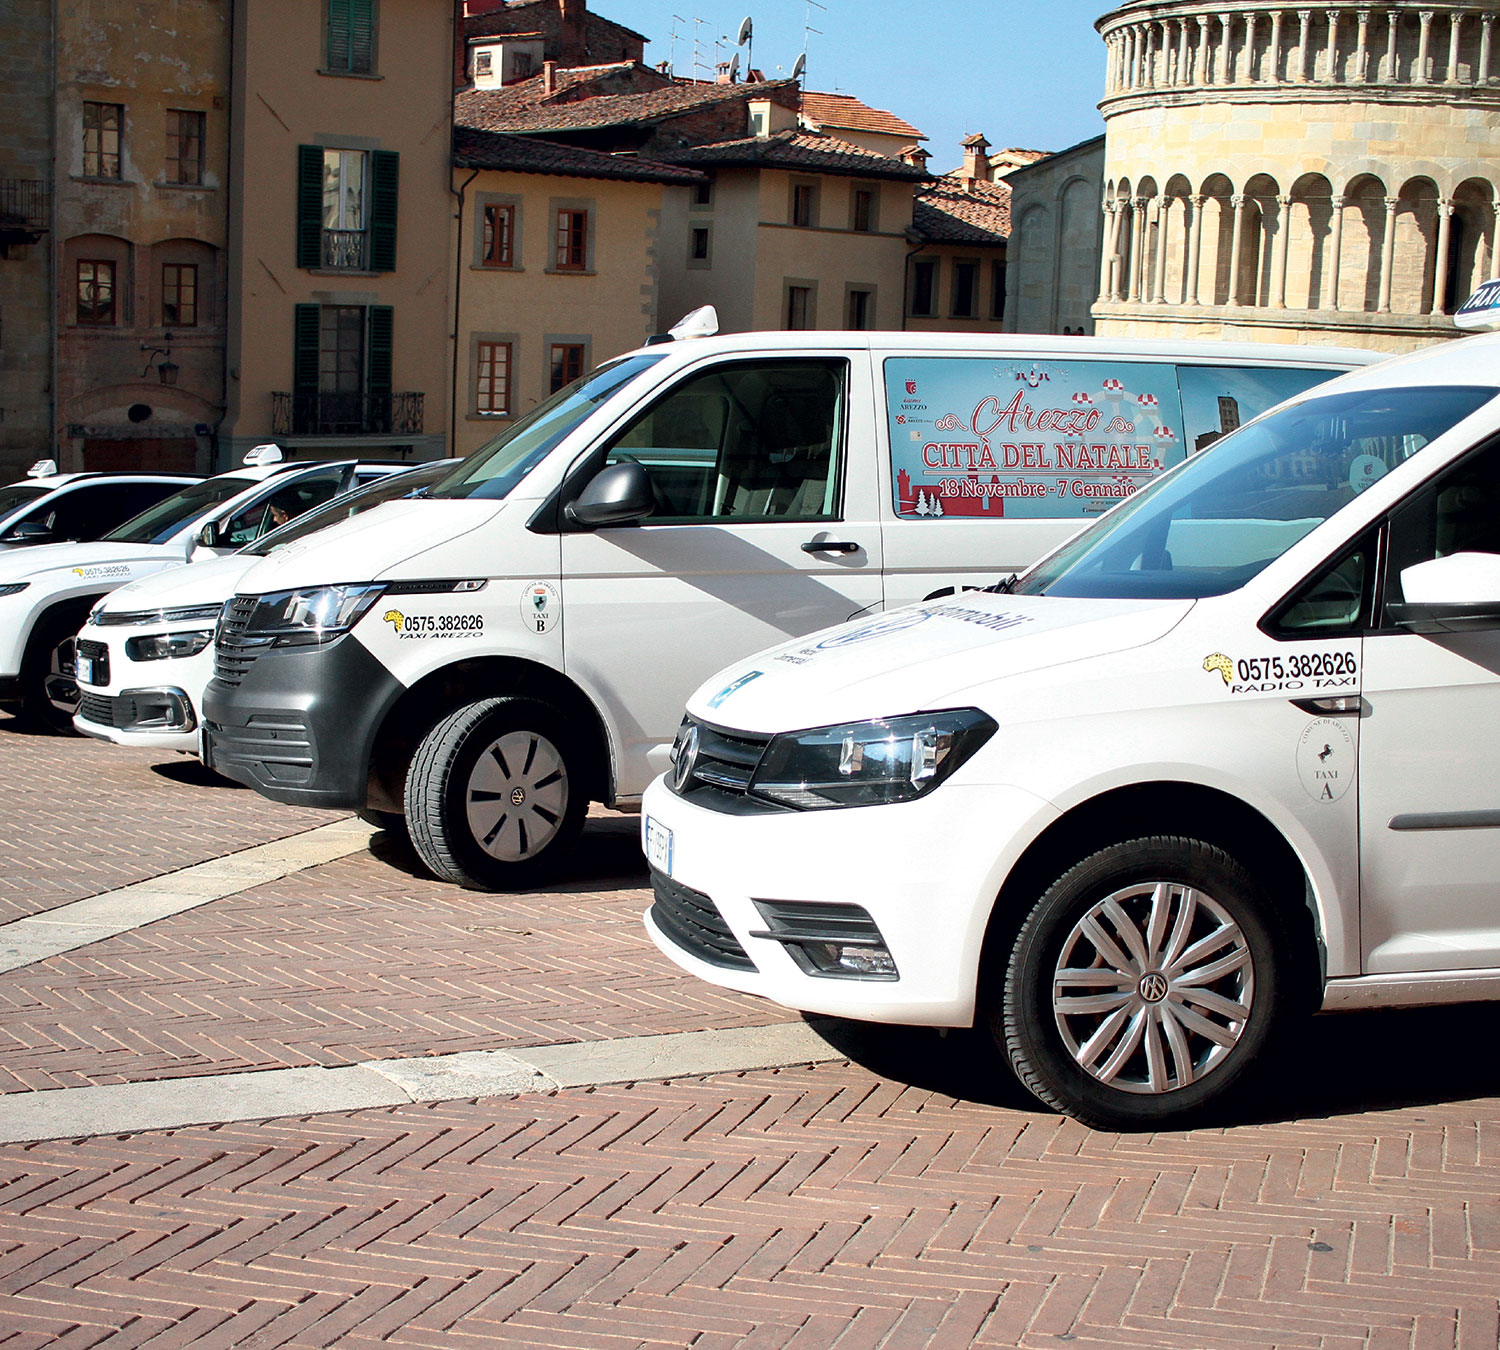 Radio Taxi Service Arezzo 24/7.Taxi Arezzo Cooperative Official website at: Via Tiziano, 32 52100 Arezzo.